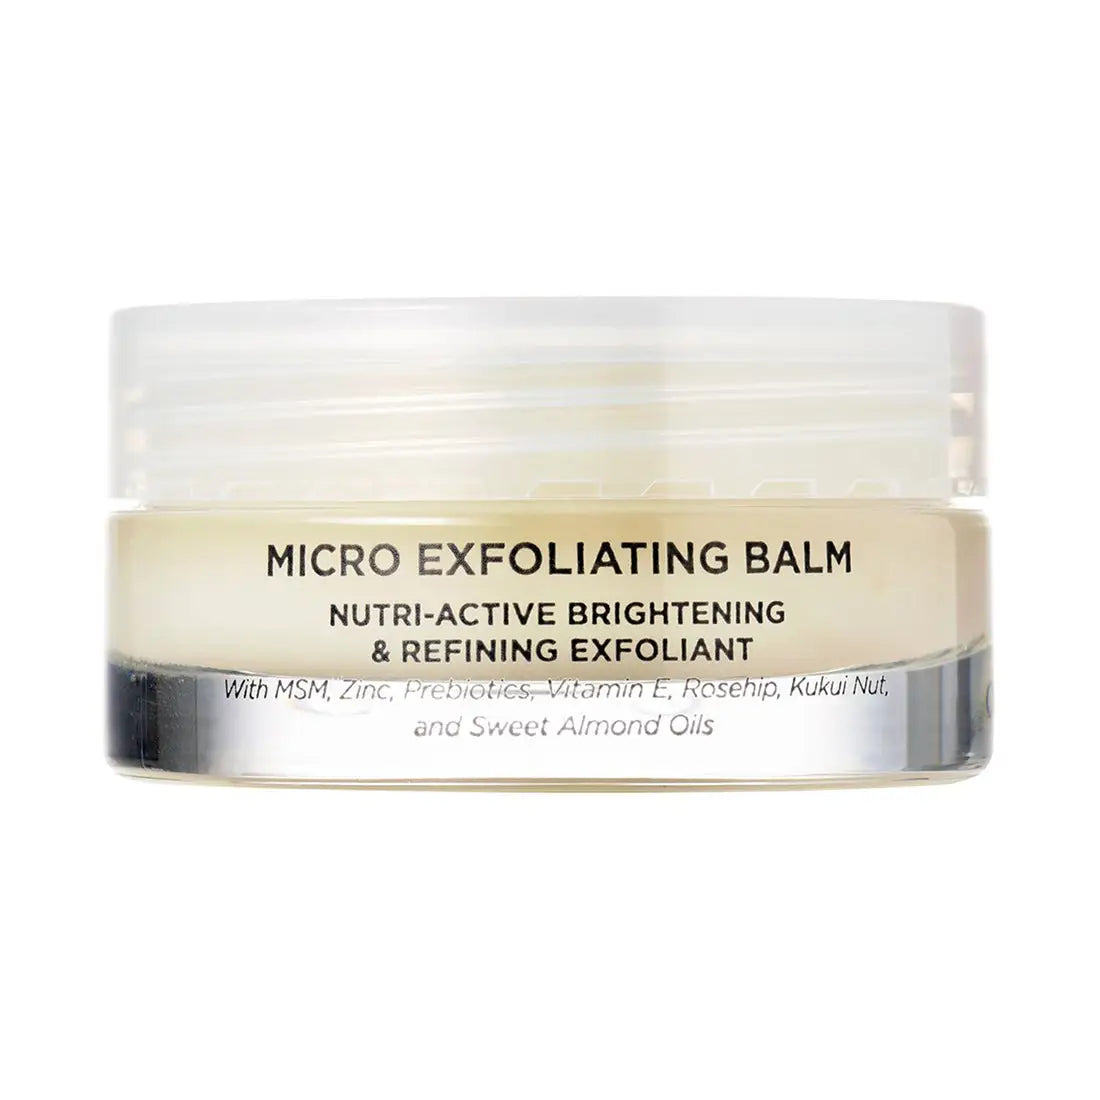 Oskia Skincare Micro Exfoliating Balm 50ml